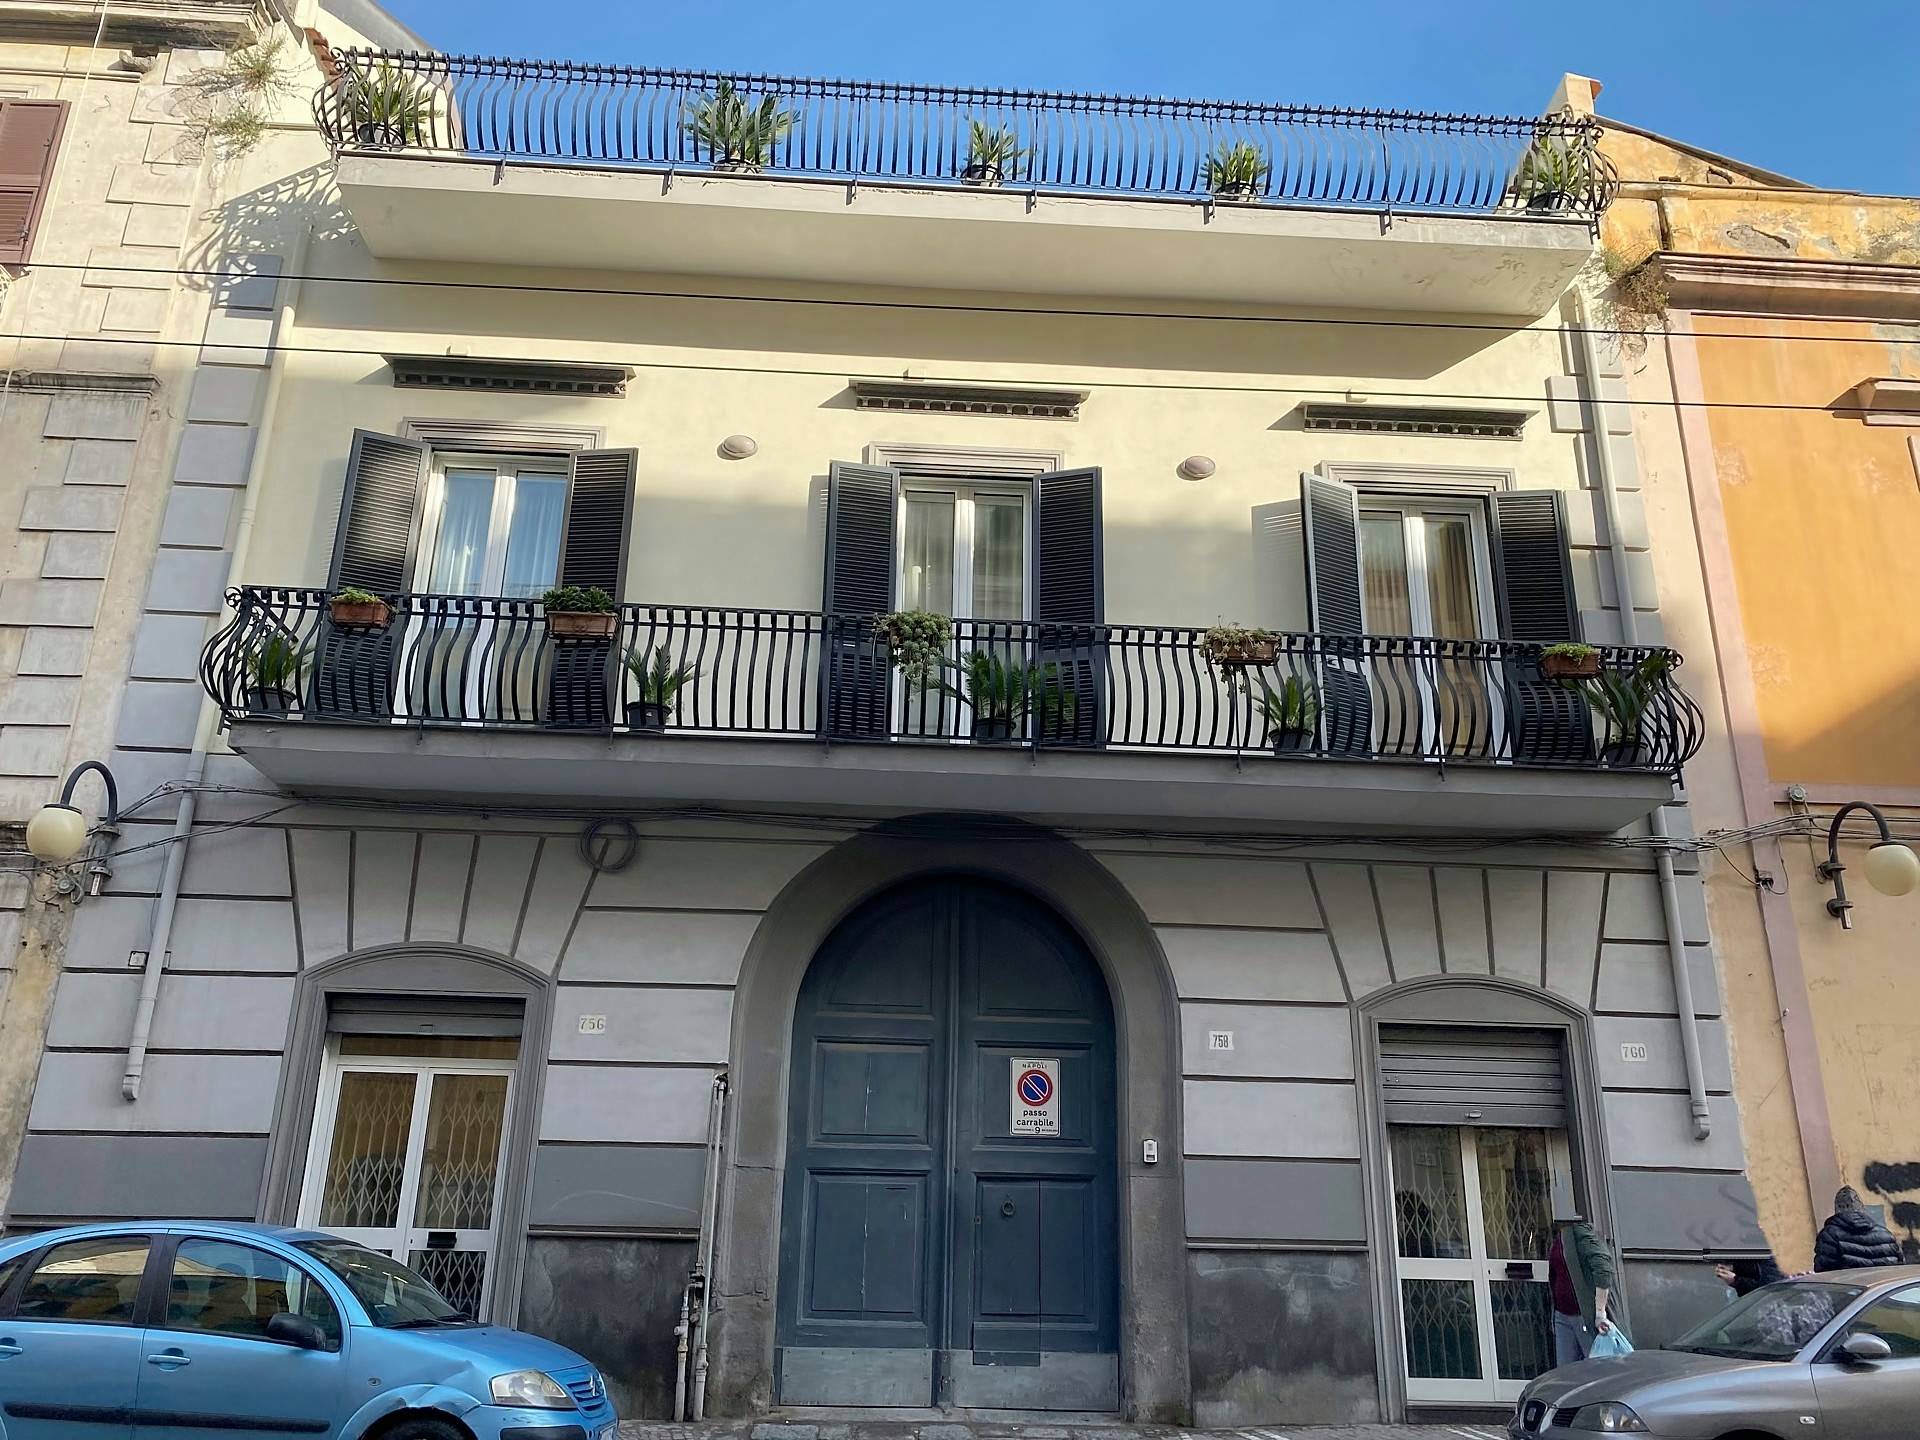 Villa in Corso San Giovanni a Teduccioi in zona San Giovanni a Teduccio a Napoli